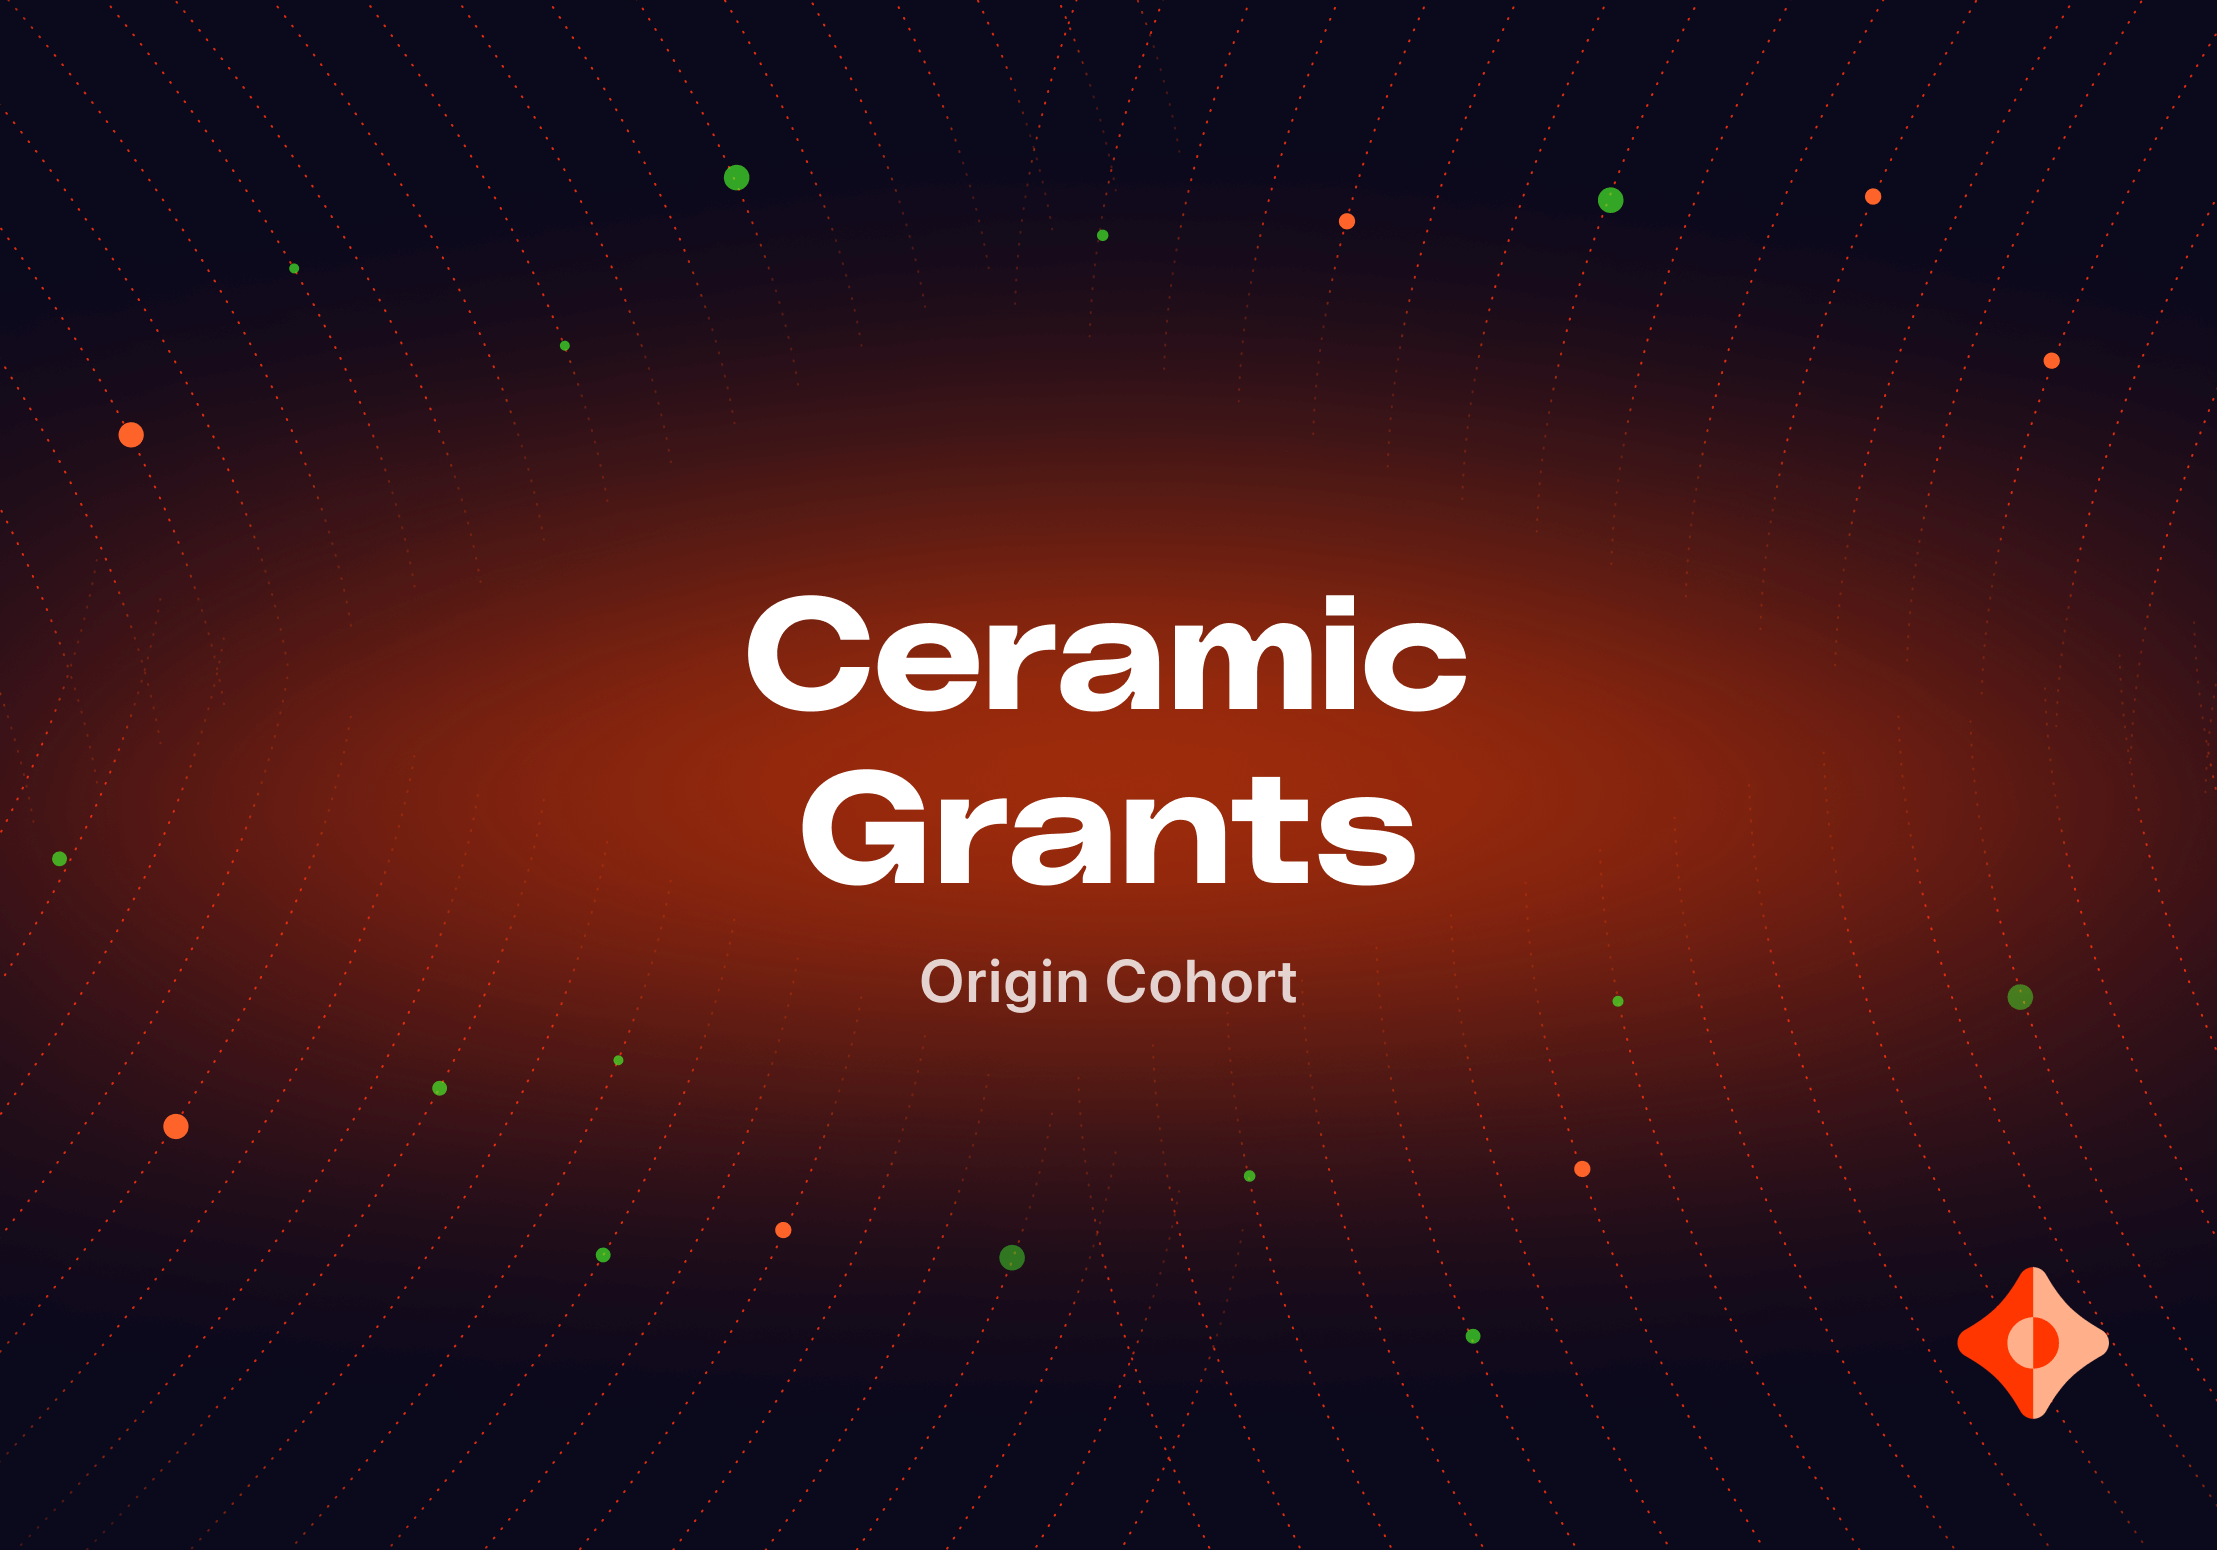 Introducing Ceramic Grants: Origin Cohort